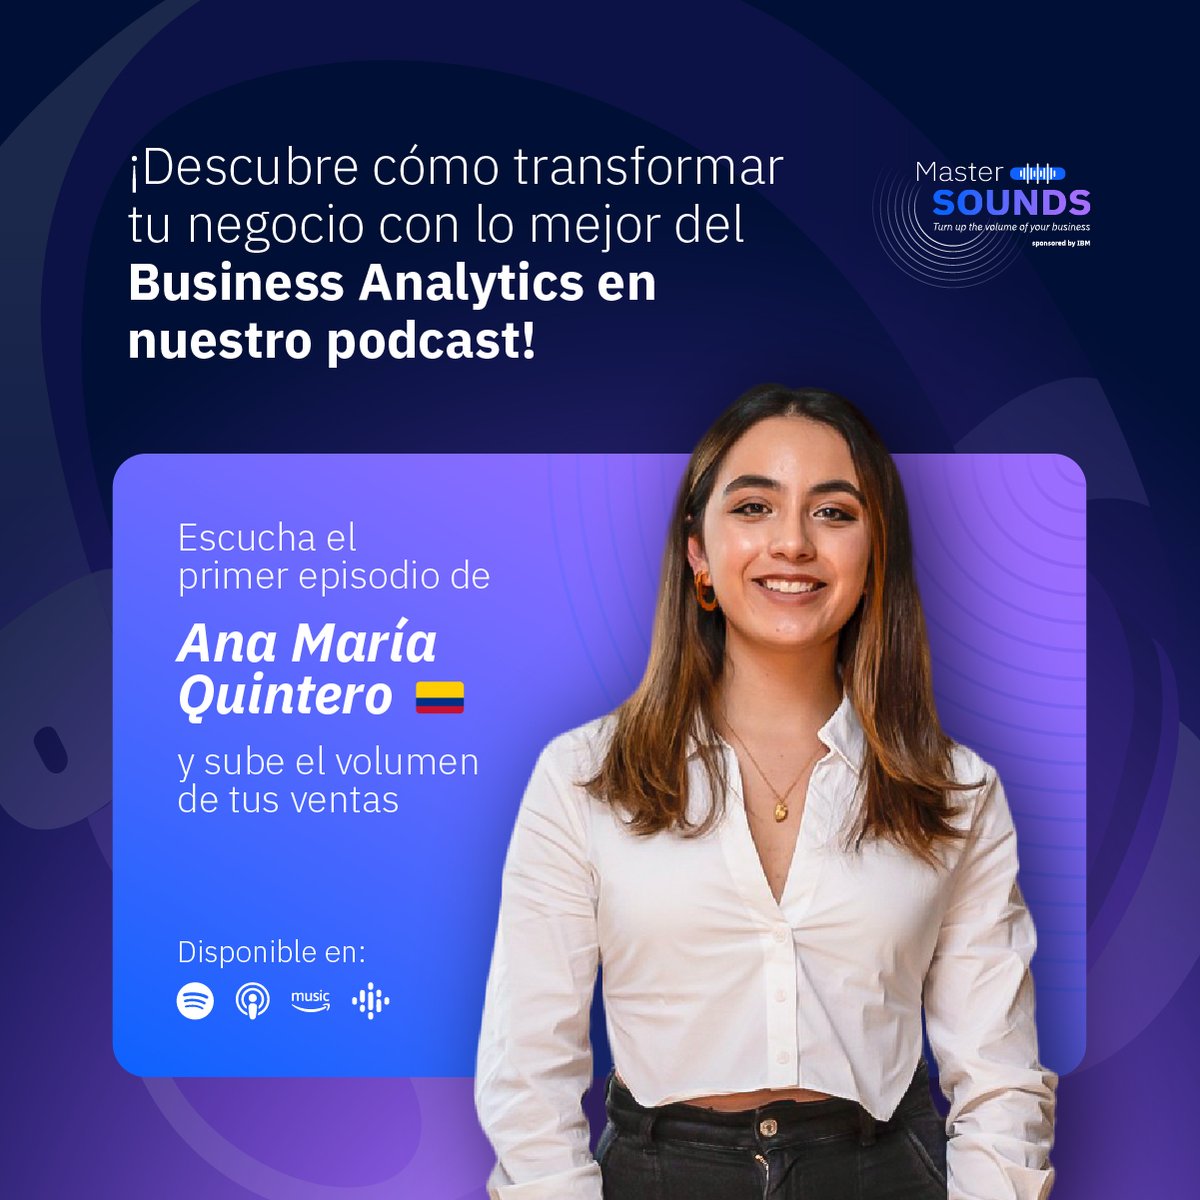 ¡El primer episodio de Master Sounds ya está disponible!
Ana María Quintero, Data & Decision Scientist en Neural Design, comparte tendencias clave del #BusinessAnalytics y su papel en la #TransformaciónDigital de los negocios.
Mira el primer episodio aquí: bit.ly/3oJNrhL